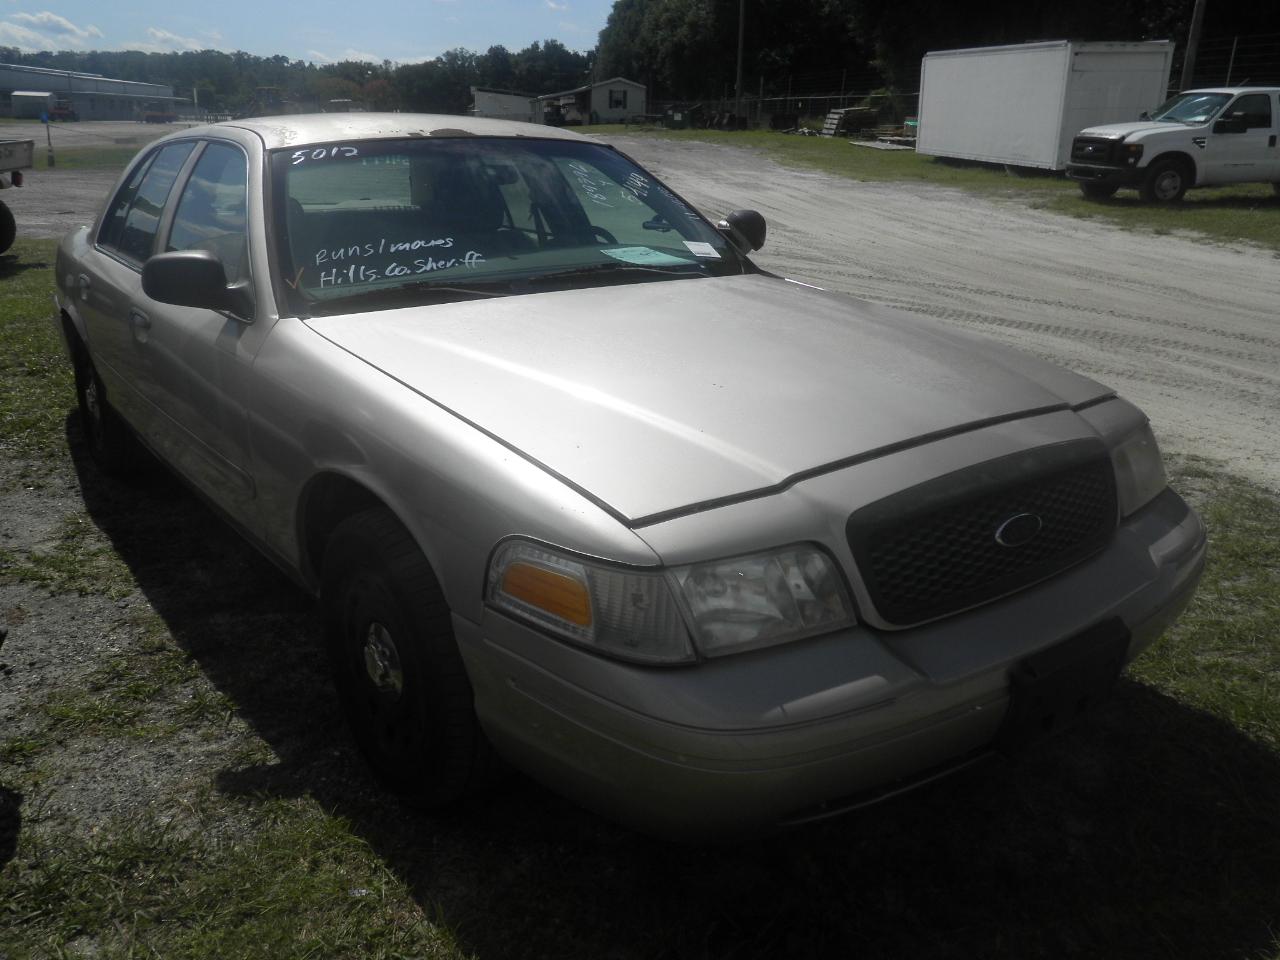 11-06110 (Cars-Sedan 4D)  Seller: Gov/Hillsborough County Sheriff-s 2003 FORD CROWNVIC